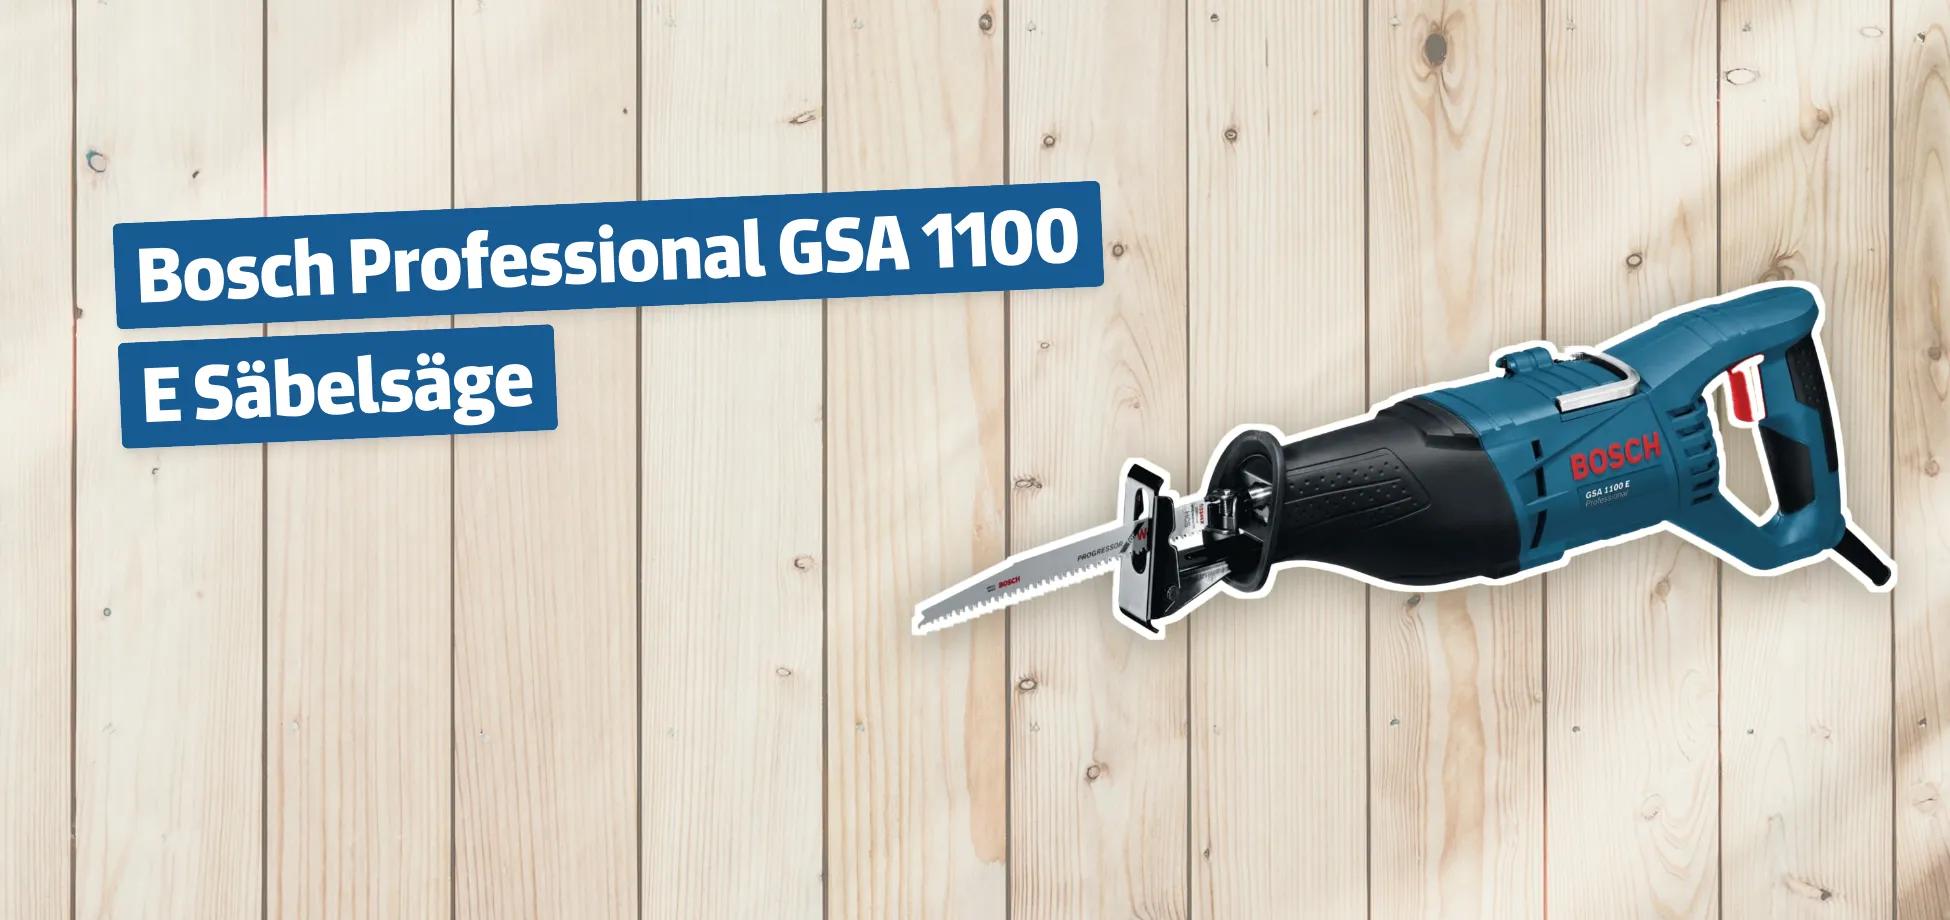 Bosch Professional GSA 1100 E Säbelsäge